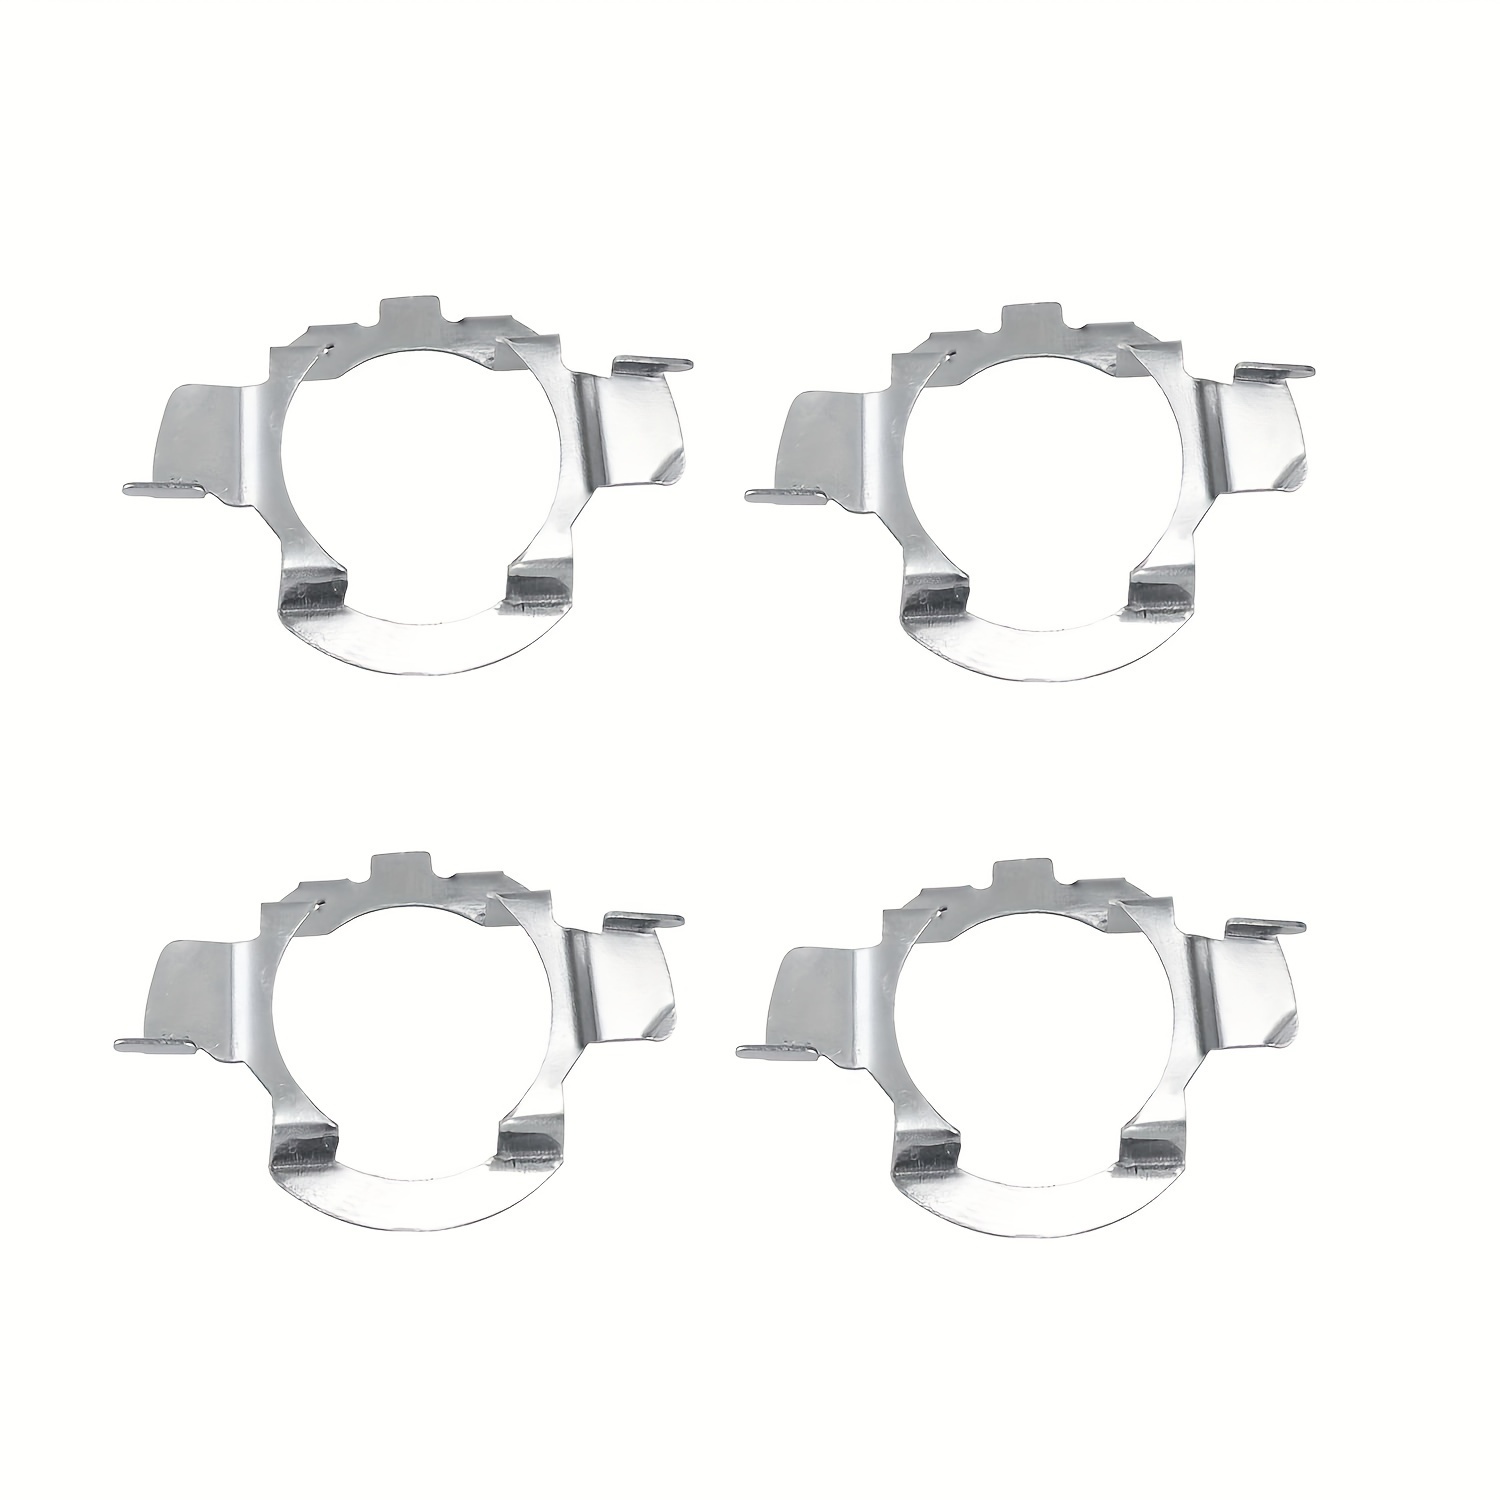 H7 LED Headlight Adapter Bulb Retainer Holder for Volkswagen New Polo 4pcs